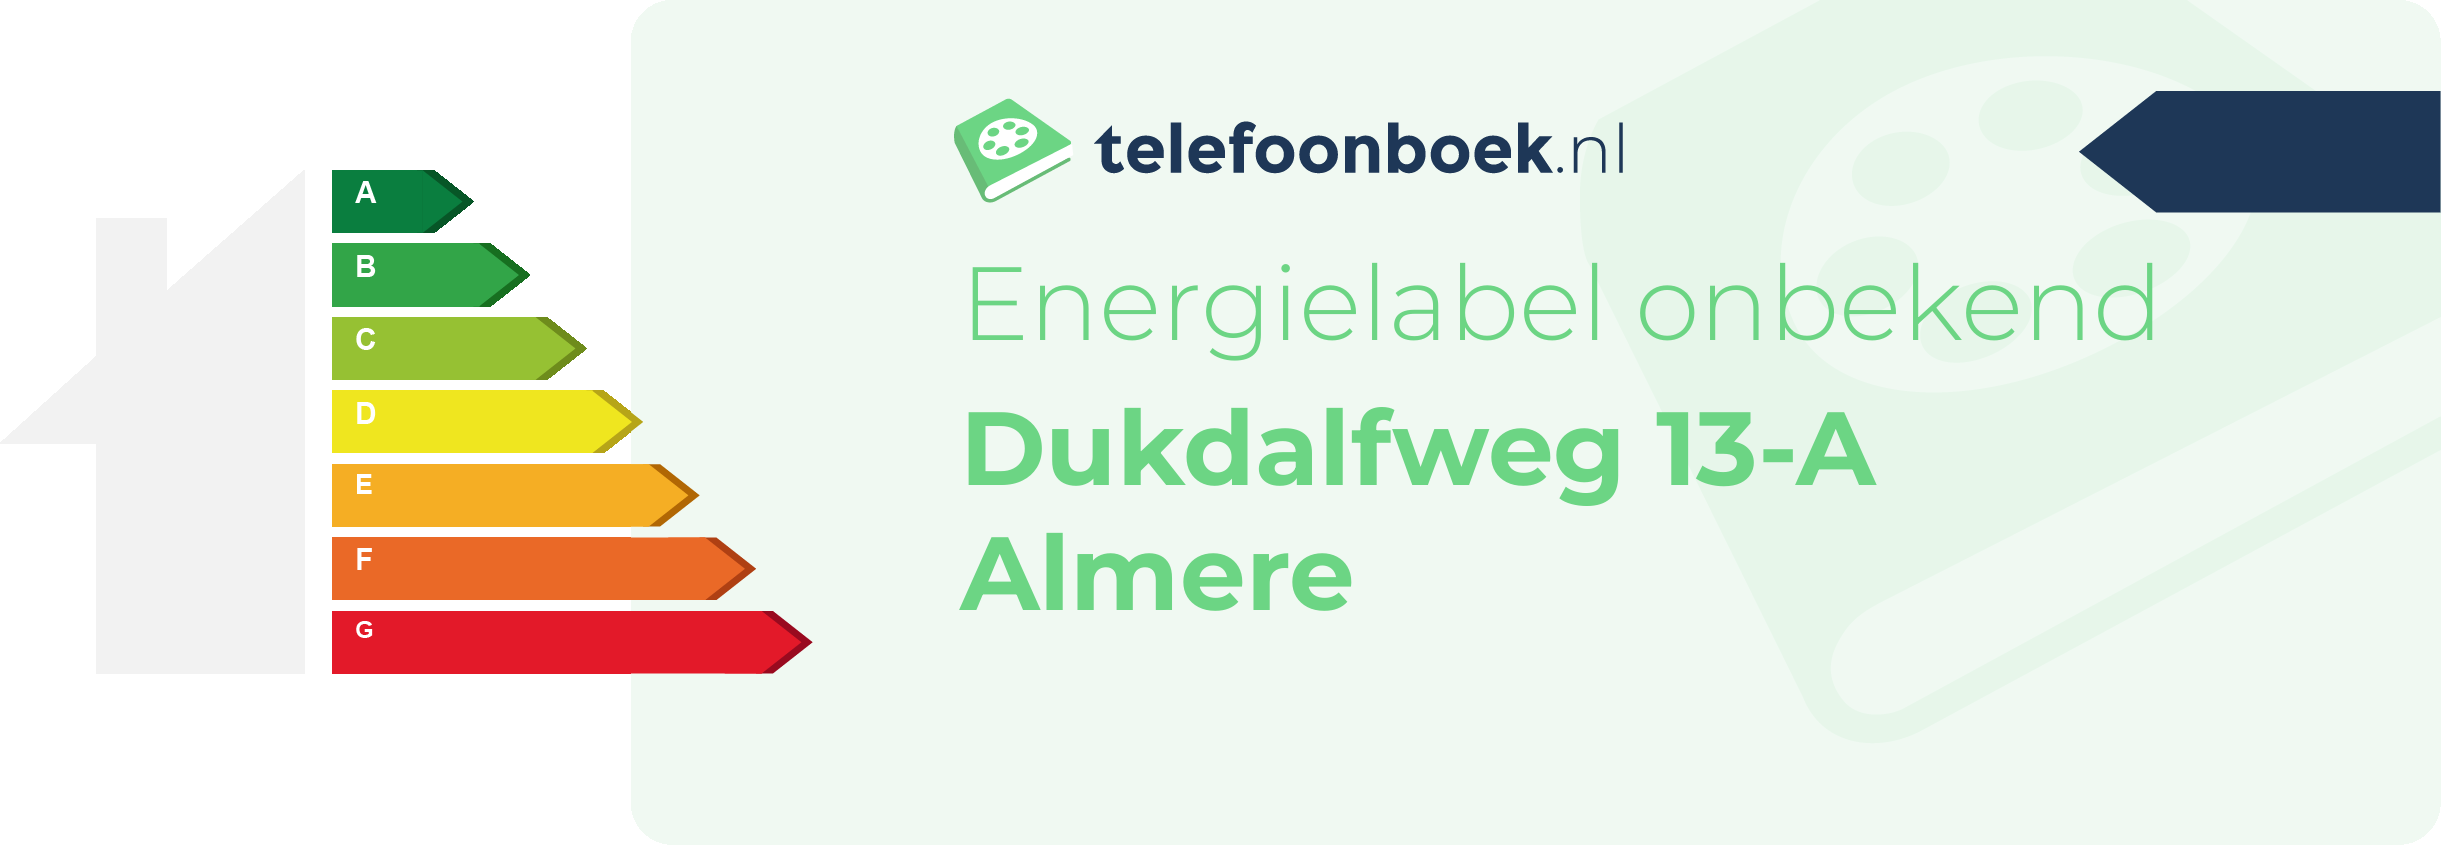 Energielabel Dukdalfweg 13-A Almere